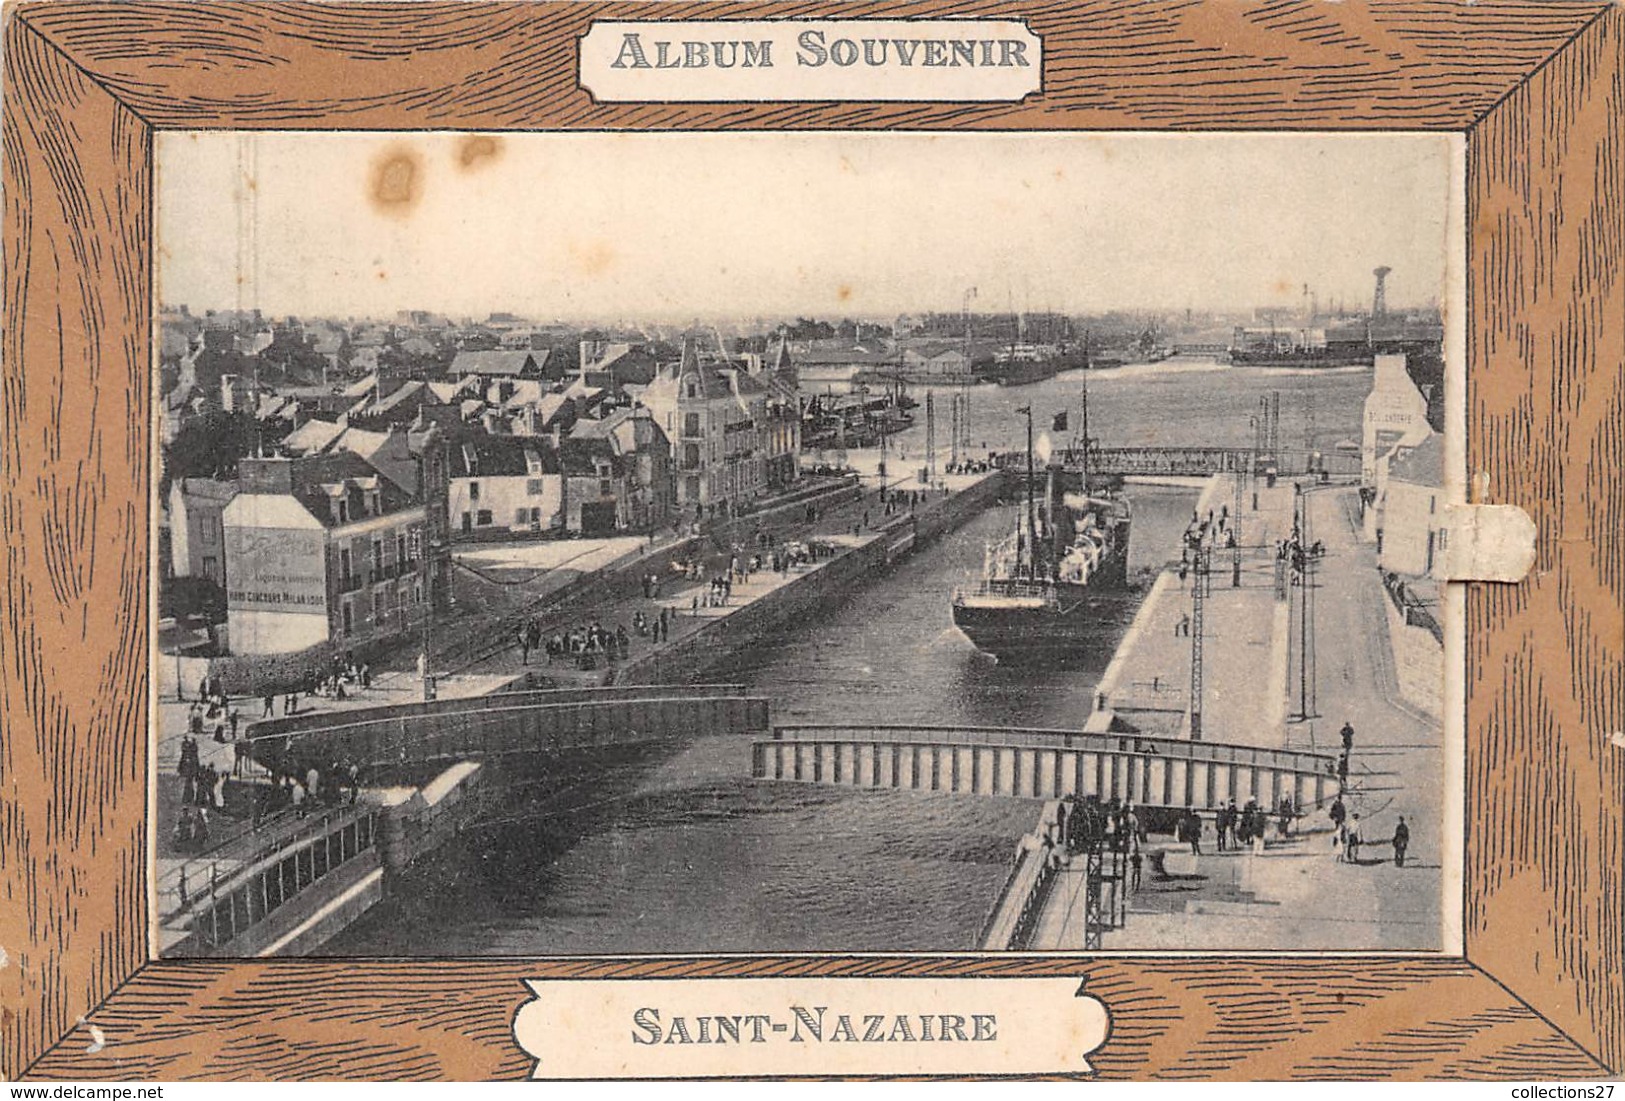 44-SAINT-NAZAIRE- ALBUM SOUVENR DEPLIANT - Saint Nazaire